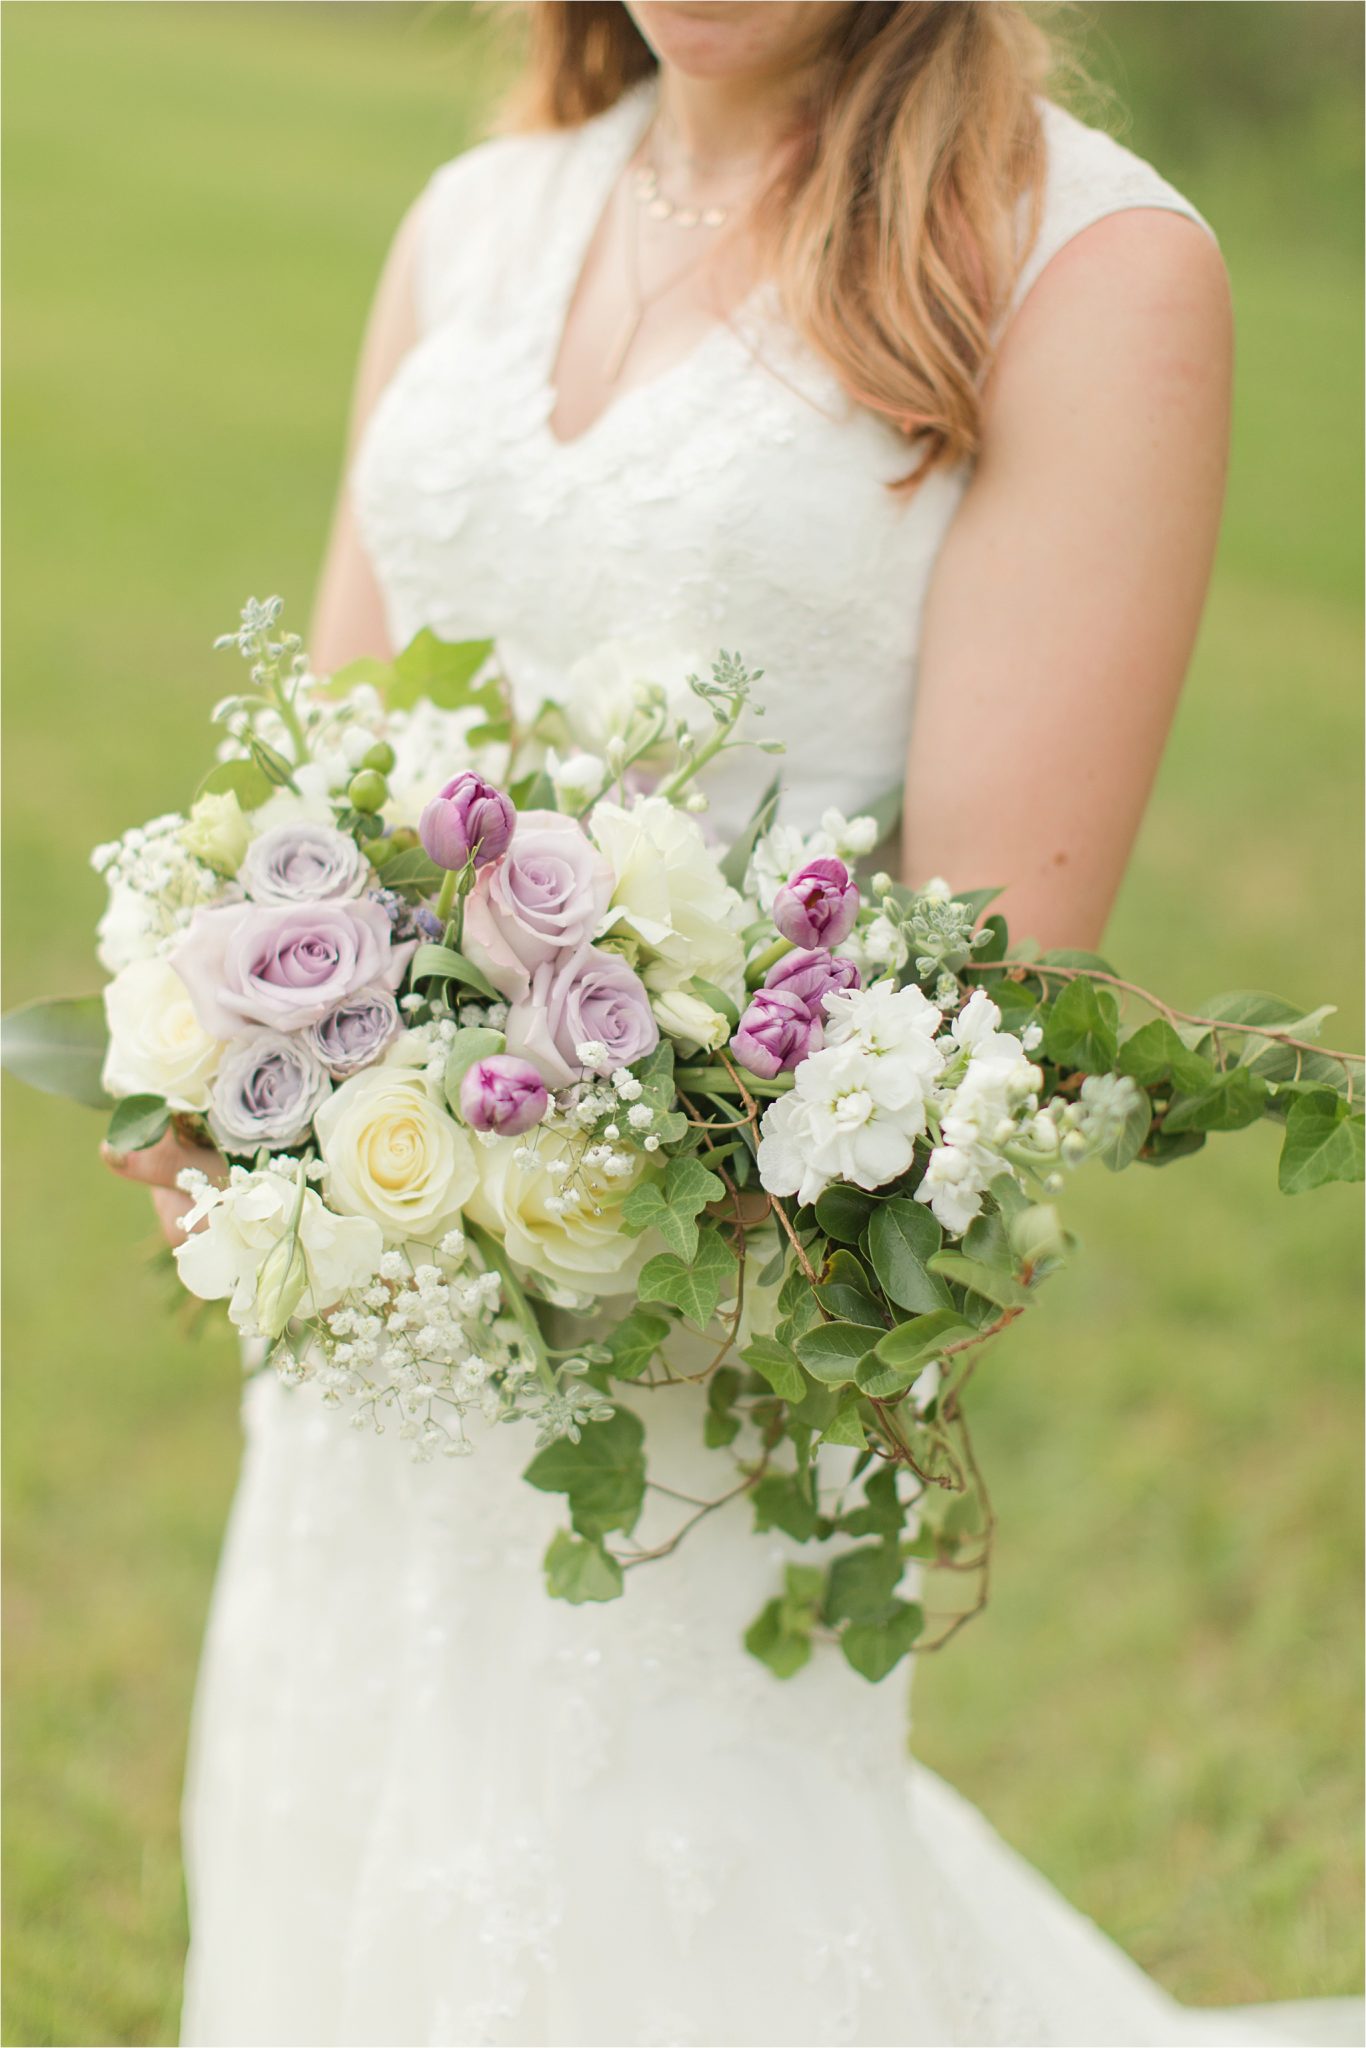 white roses-lavender roses-purple tulips-babies breath-ivy-wedding bouquet-bridal bouquet-brides bouquet